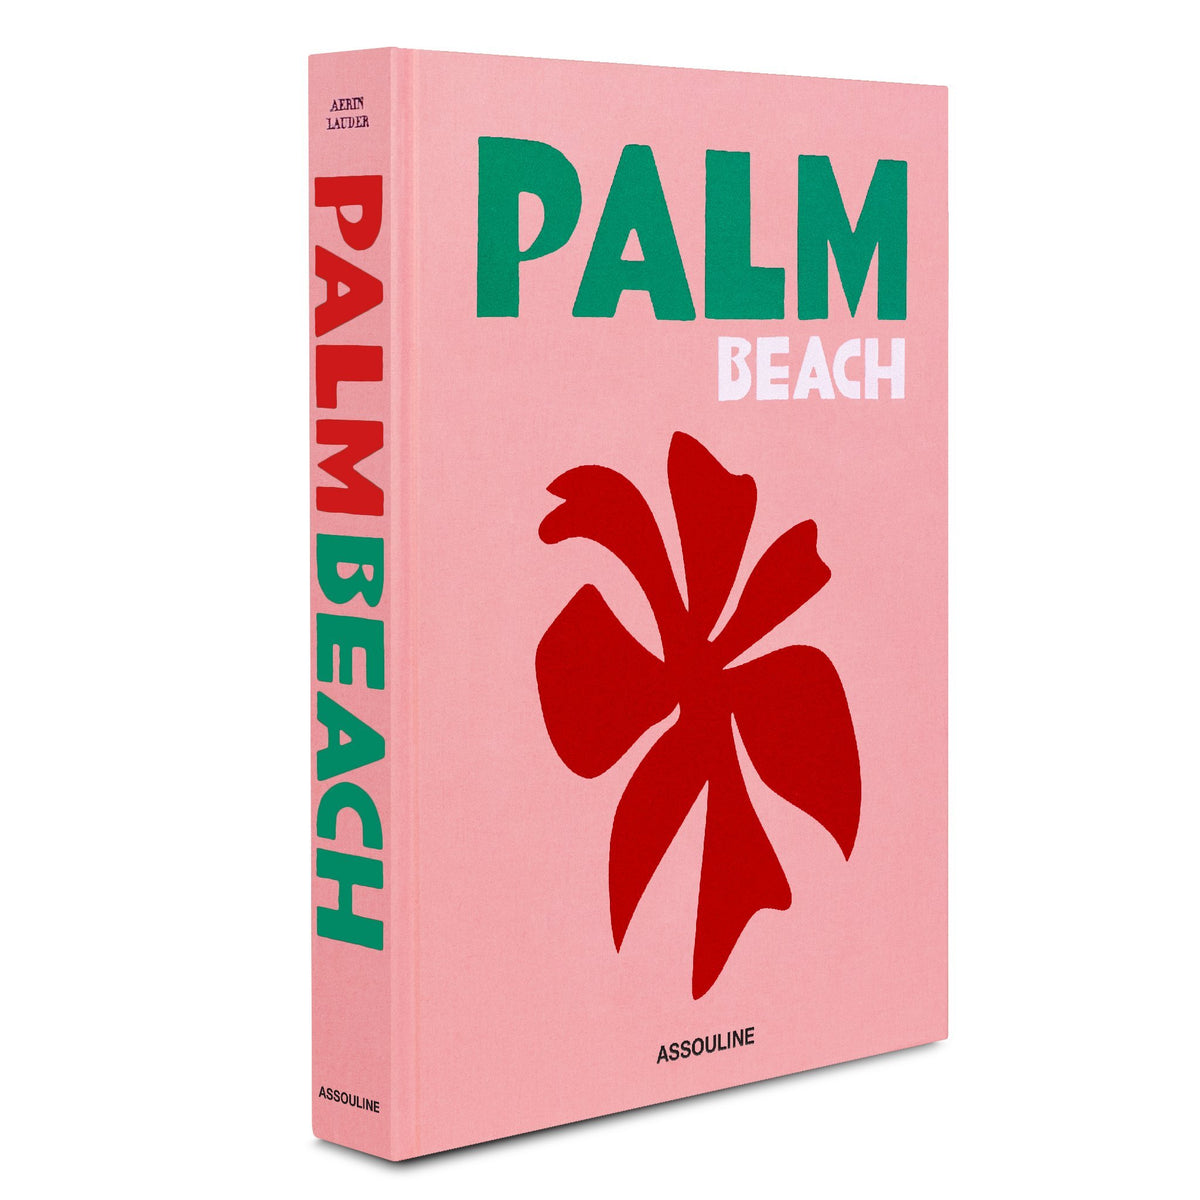 "Palm Beach"